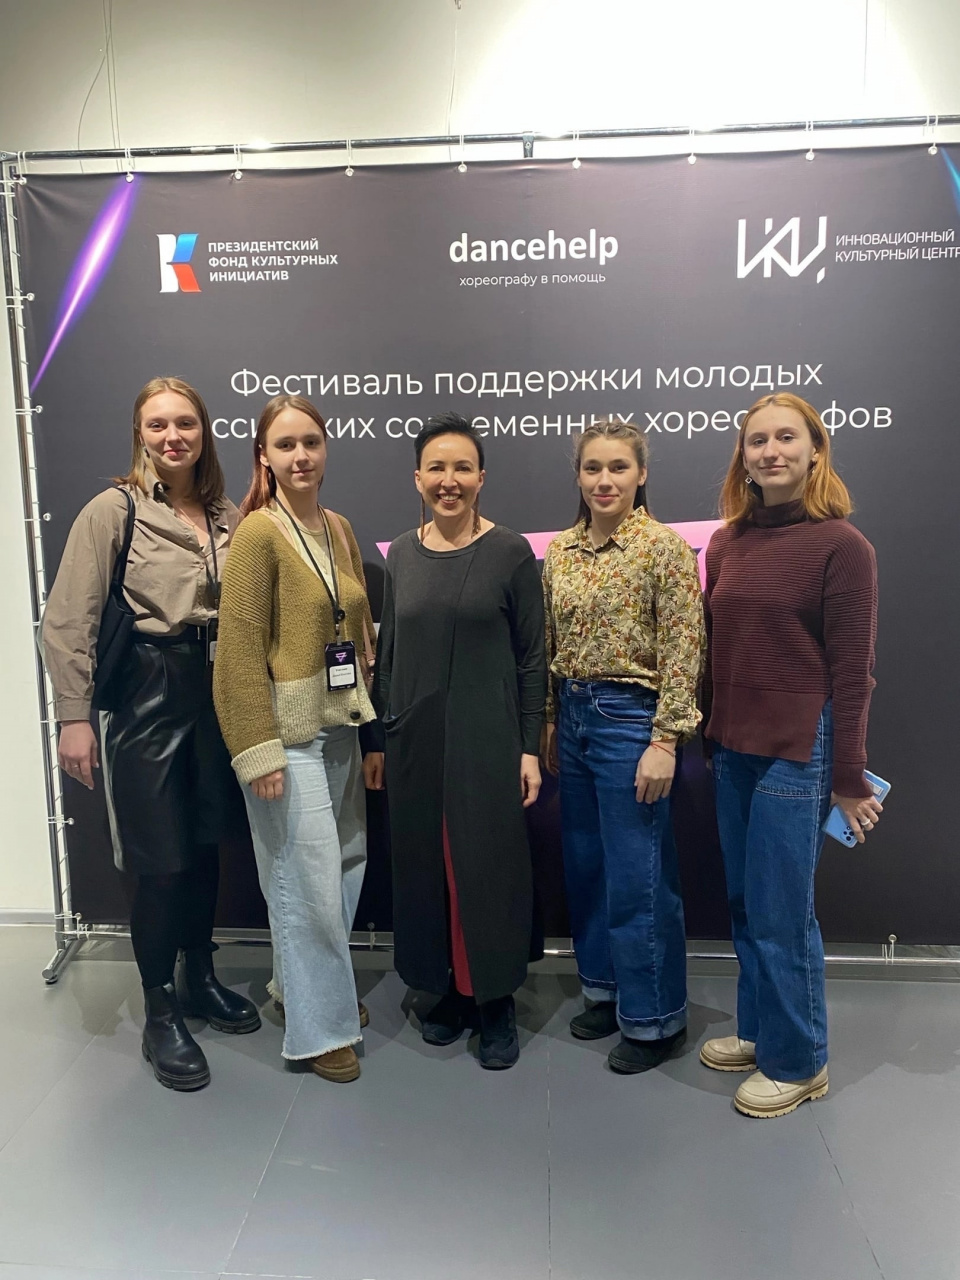 Студенты ИвГУ стали участниками одного из главных событий года в сфере современной хореографии